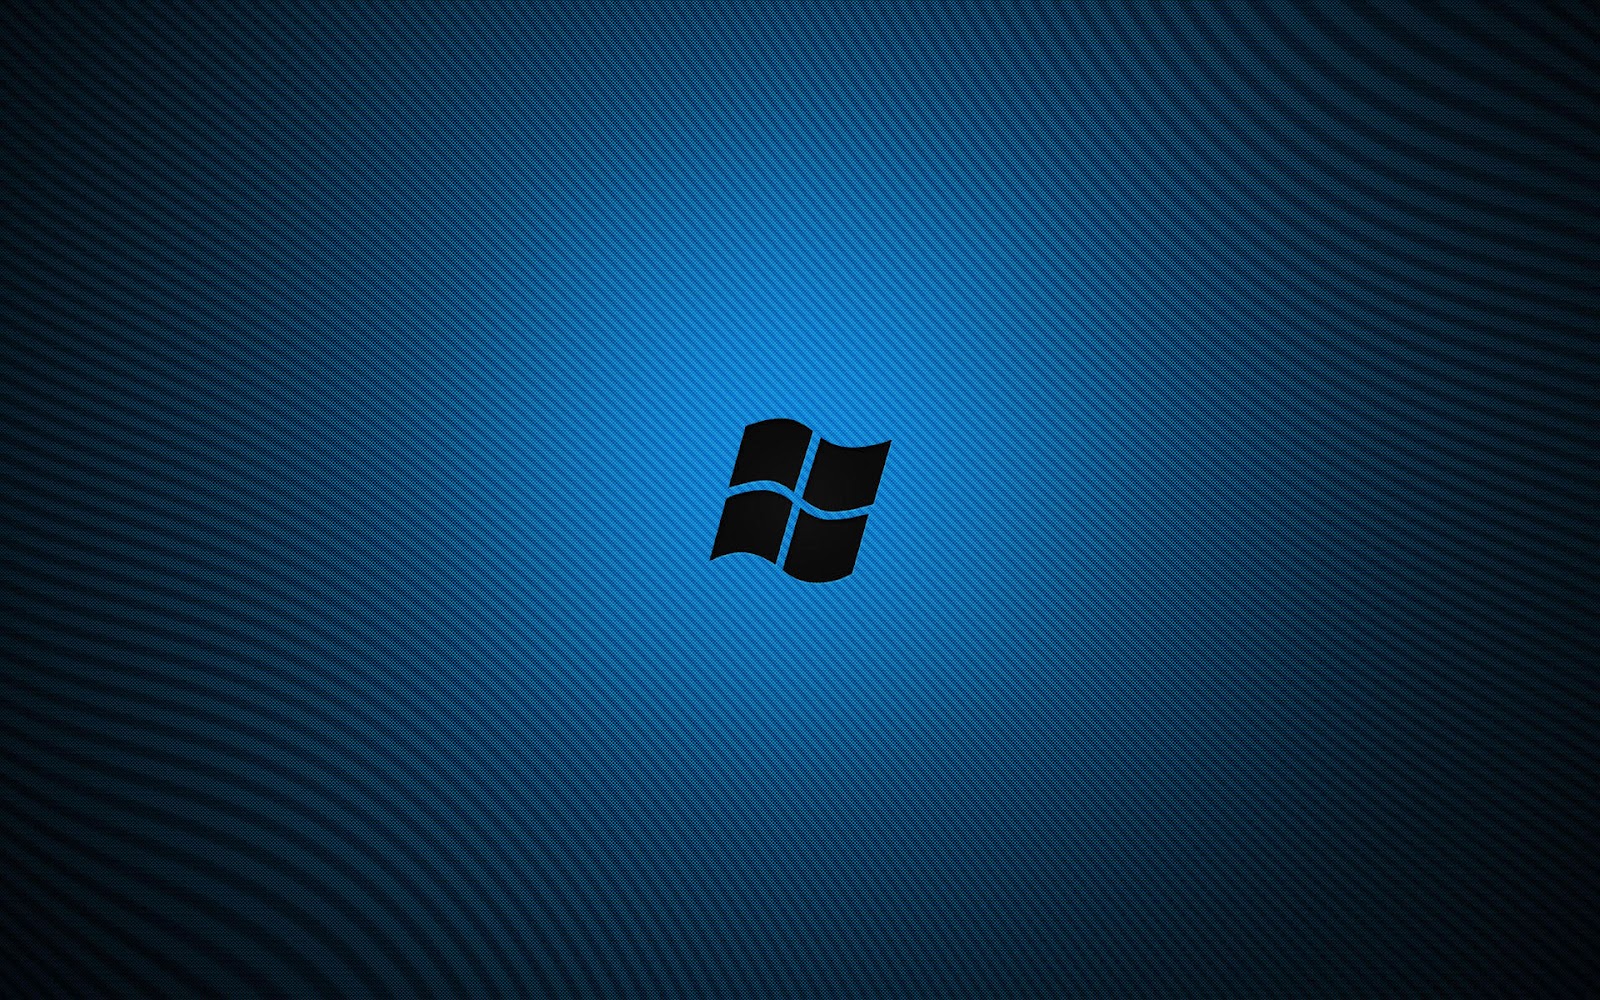 http://3.bp.blogspot.com/-Rqyaktb7i60/T3BH6eVuFwI/AAAAAAAAAQw/fLuutjVmfIw/s1600/windows+7+wallpaper+hd+blue.jpg